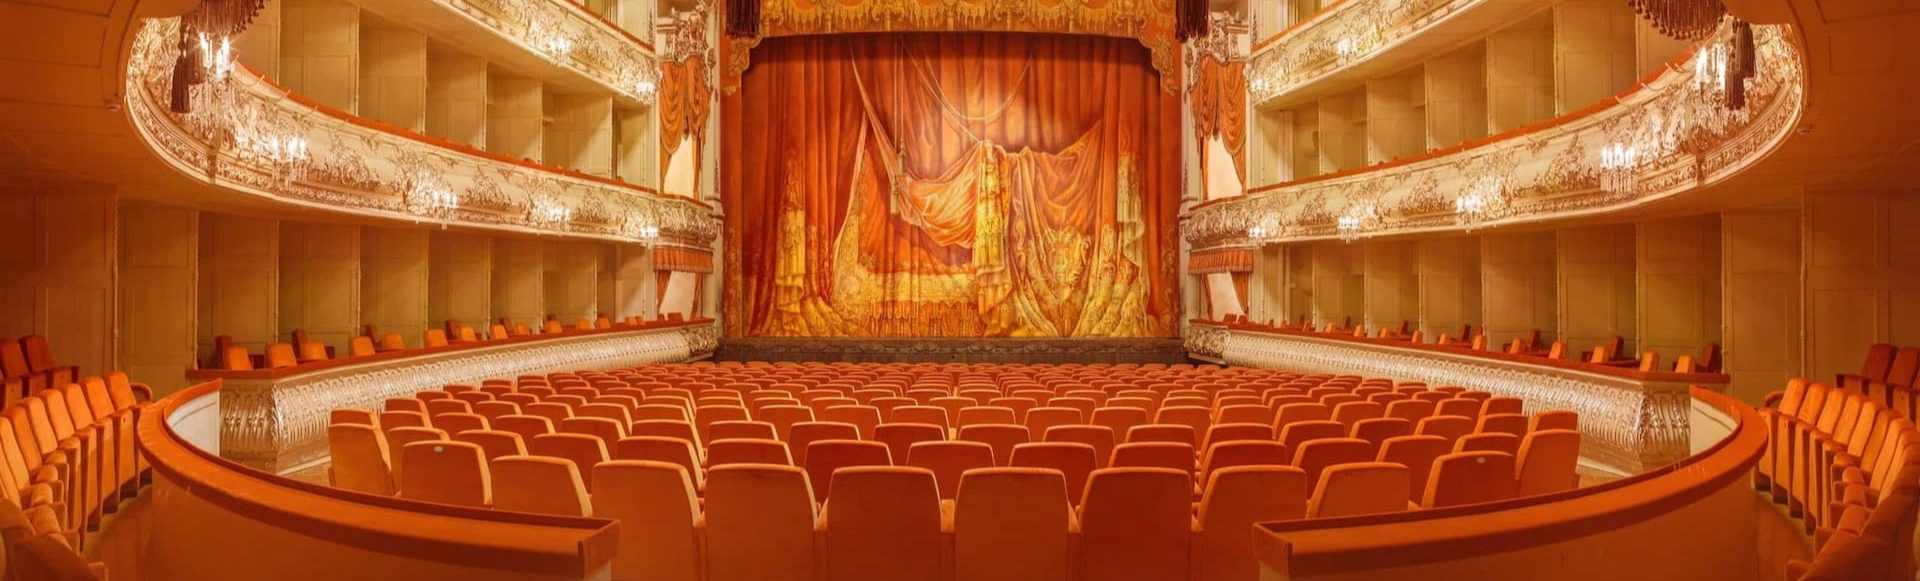 В Михайловском театре стартовала продажа билетов на балет и оперу в апреле
